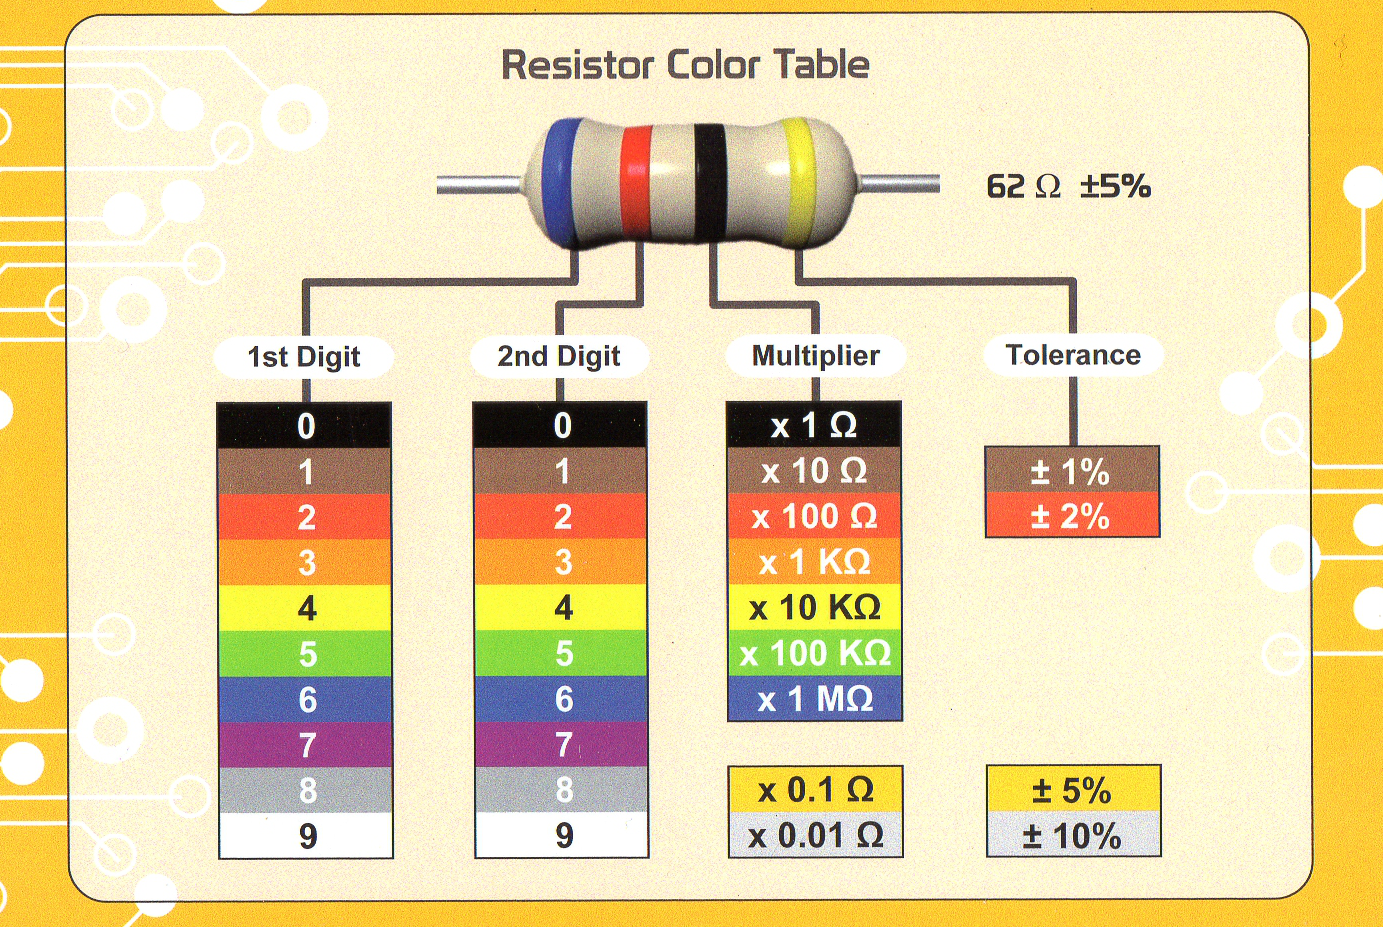 Калькулятор сопротивлений по цветам. Цветовая маркировка резисторов 4 полосы. Цветовая маркировка резисторов 2 полосы. Цветовая маркировка резисторов 5 полос. Резистор 0.22 Ома цветовая маркировка.